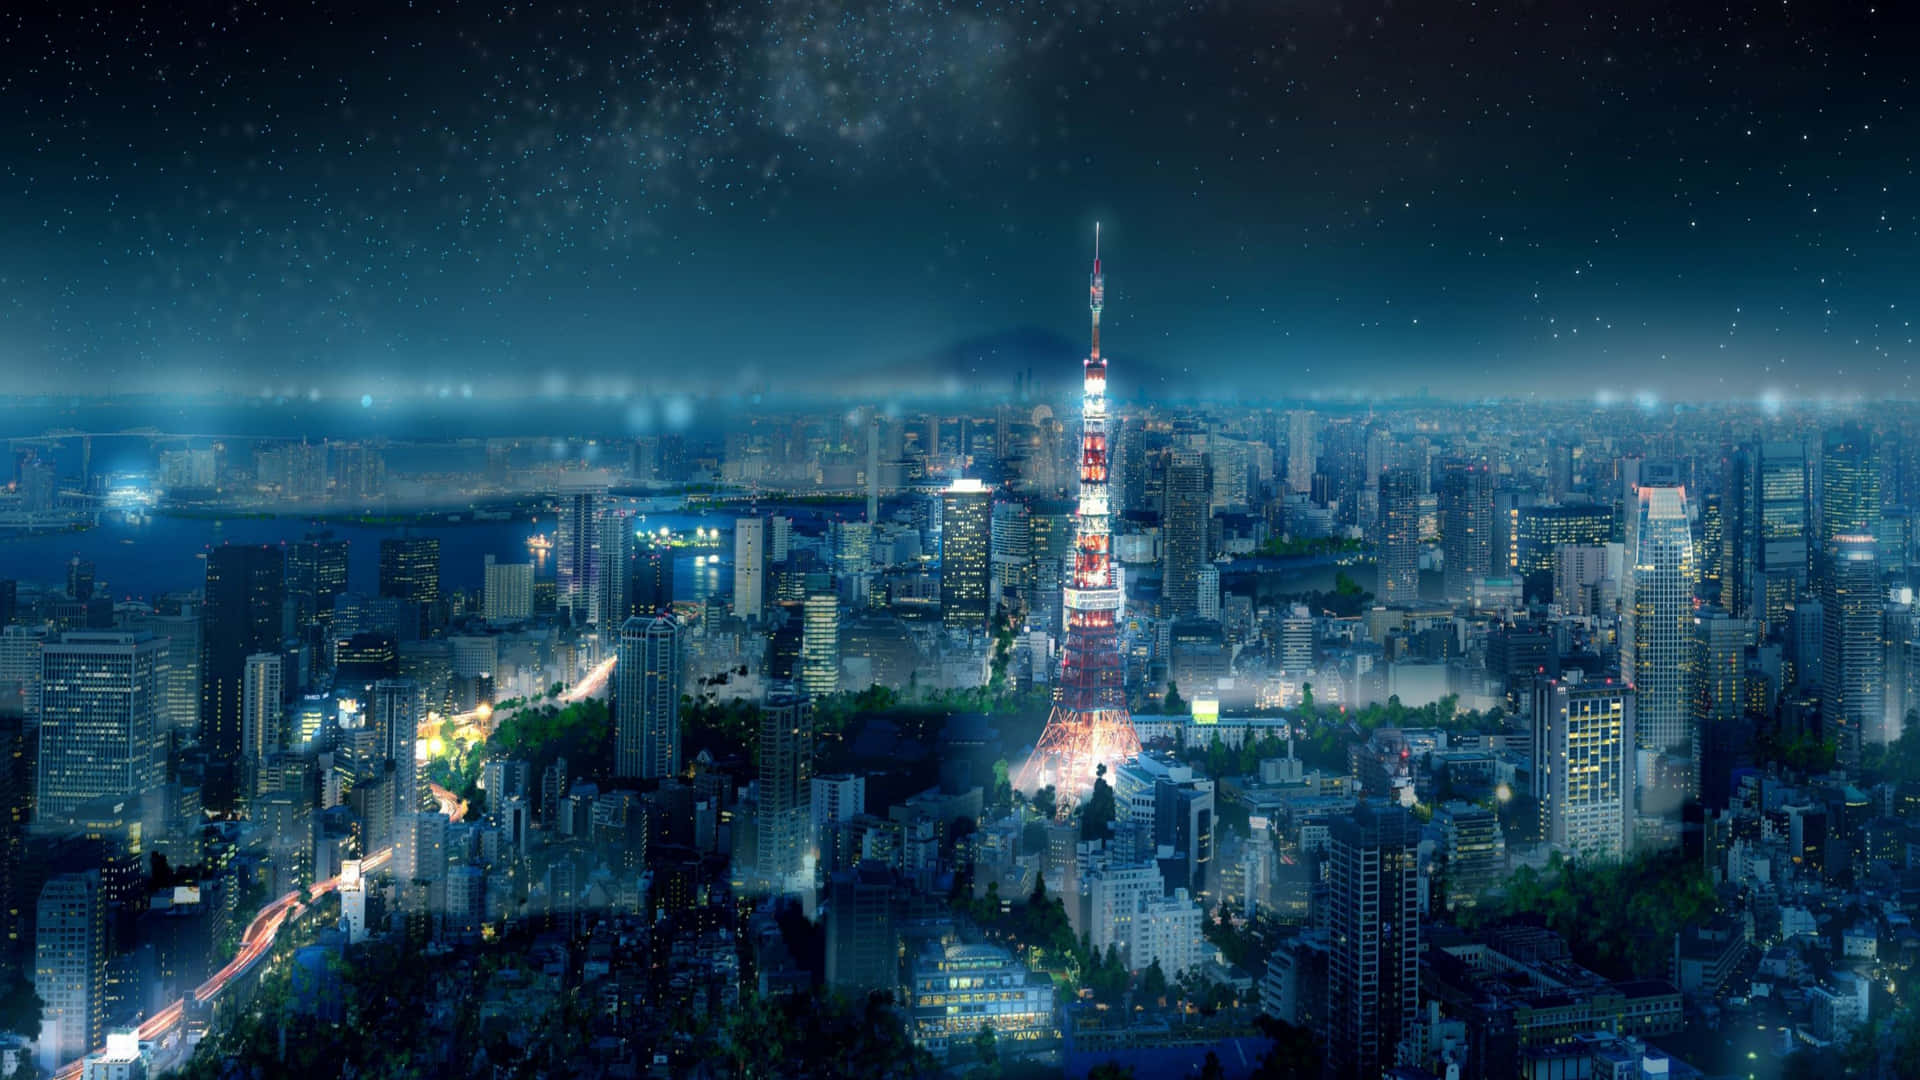 Einfaszinierender Nächtlicher Blick Auf Die Tokioter Skyline Mit Einem Hauch Von Anime. Wallpaper